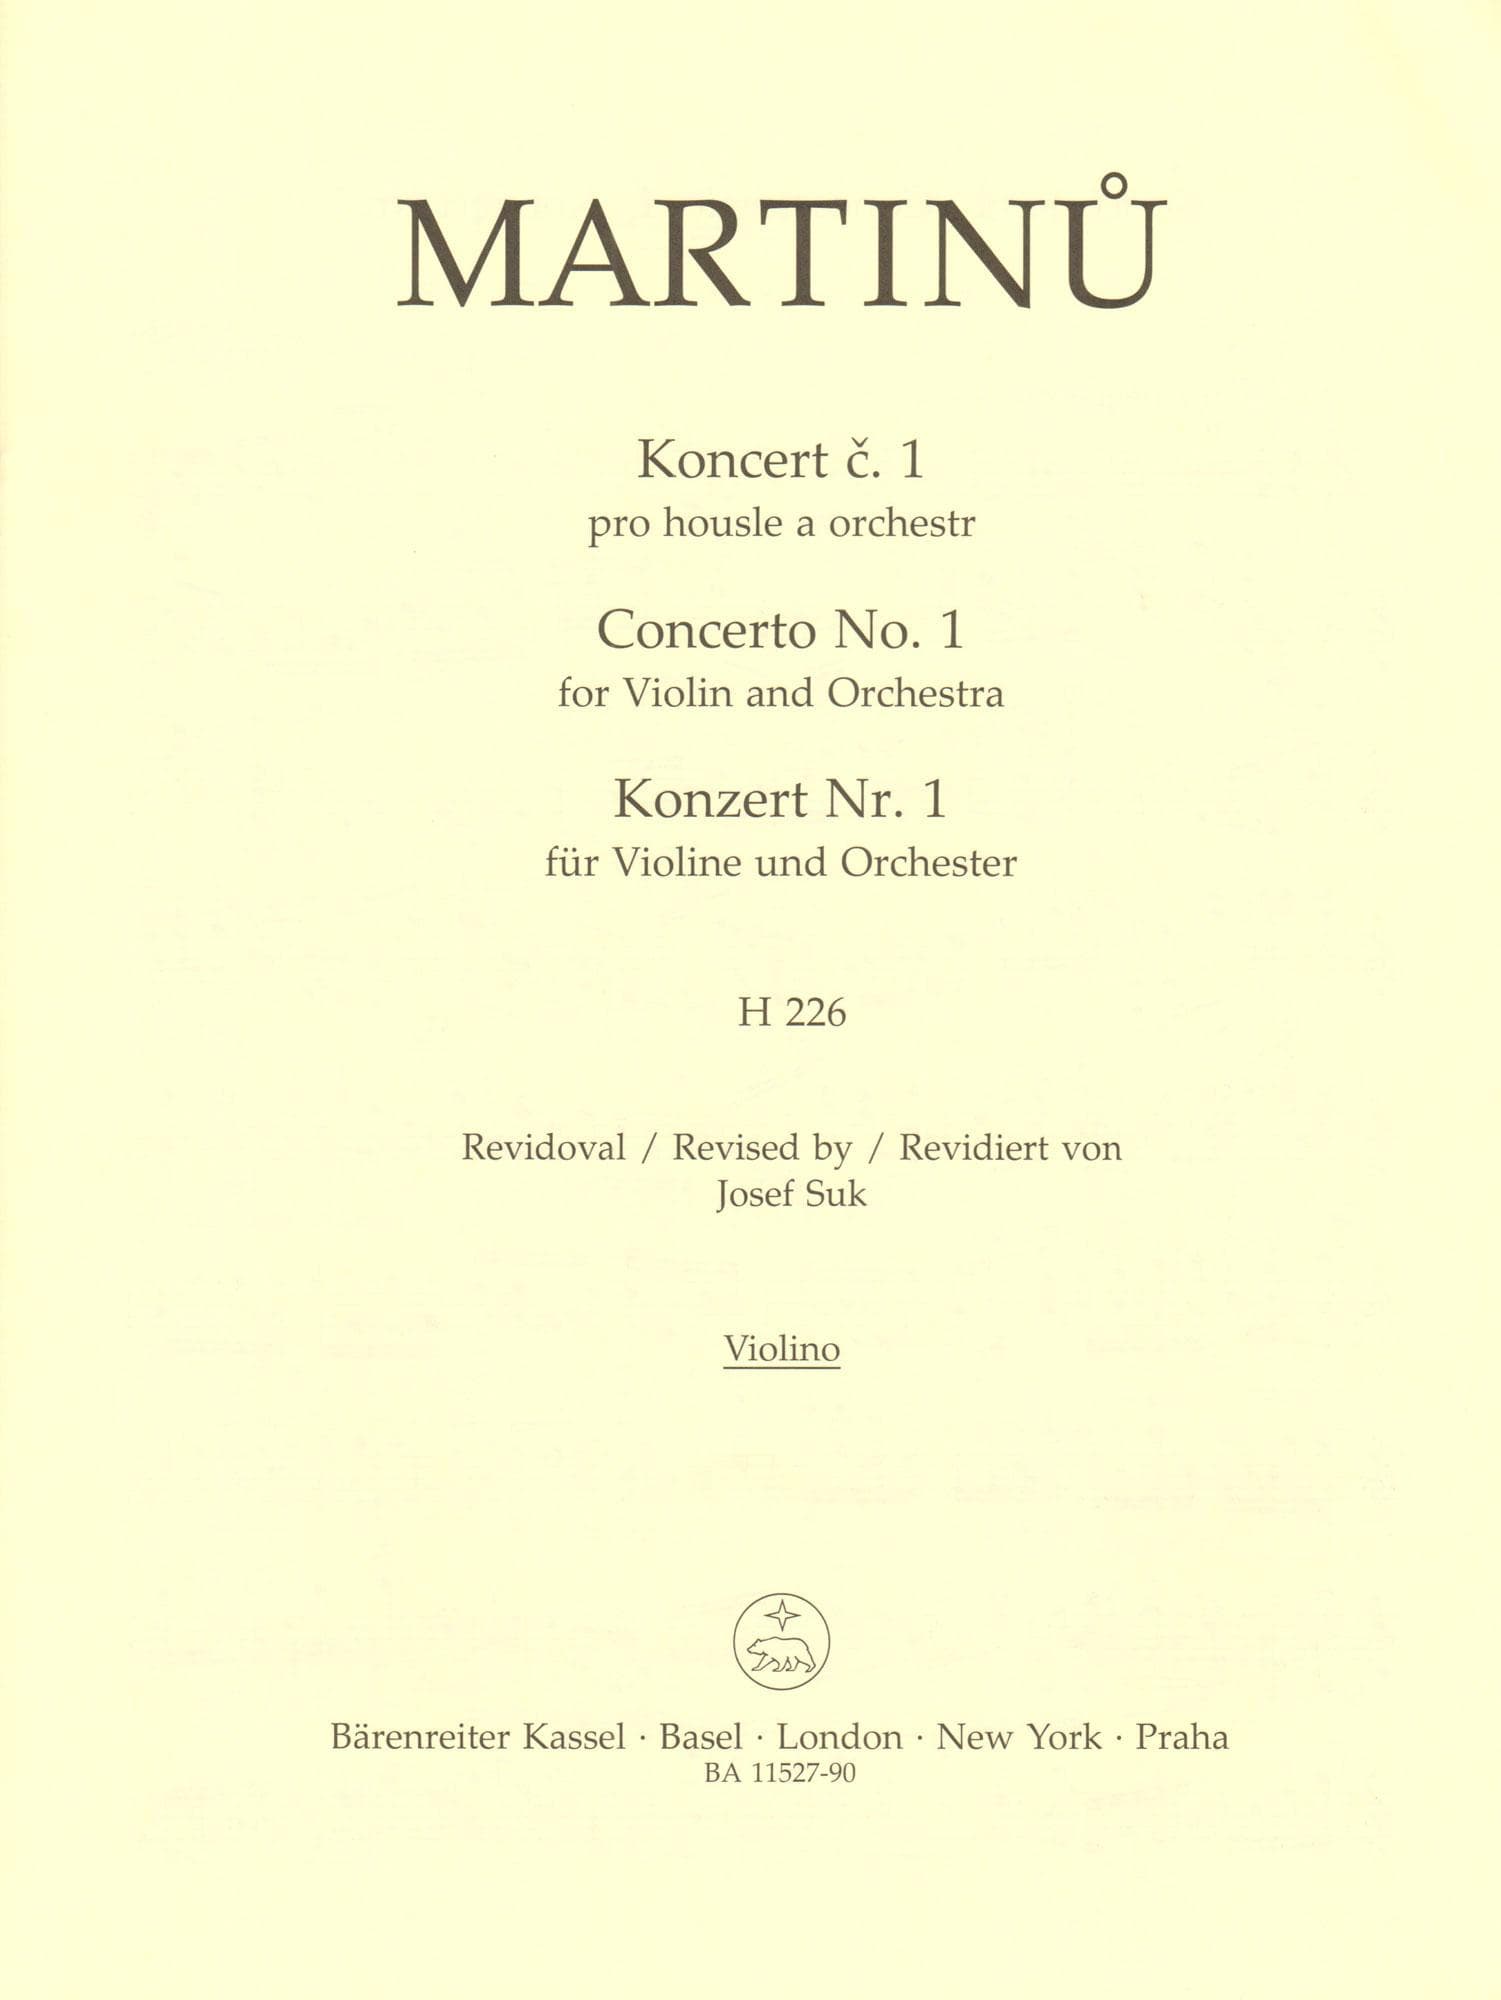 Martinu, Bohuslav - Concerto No. 1 - for Violin and Piano - Barenreiter URTEXT